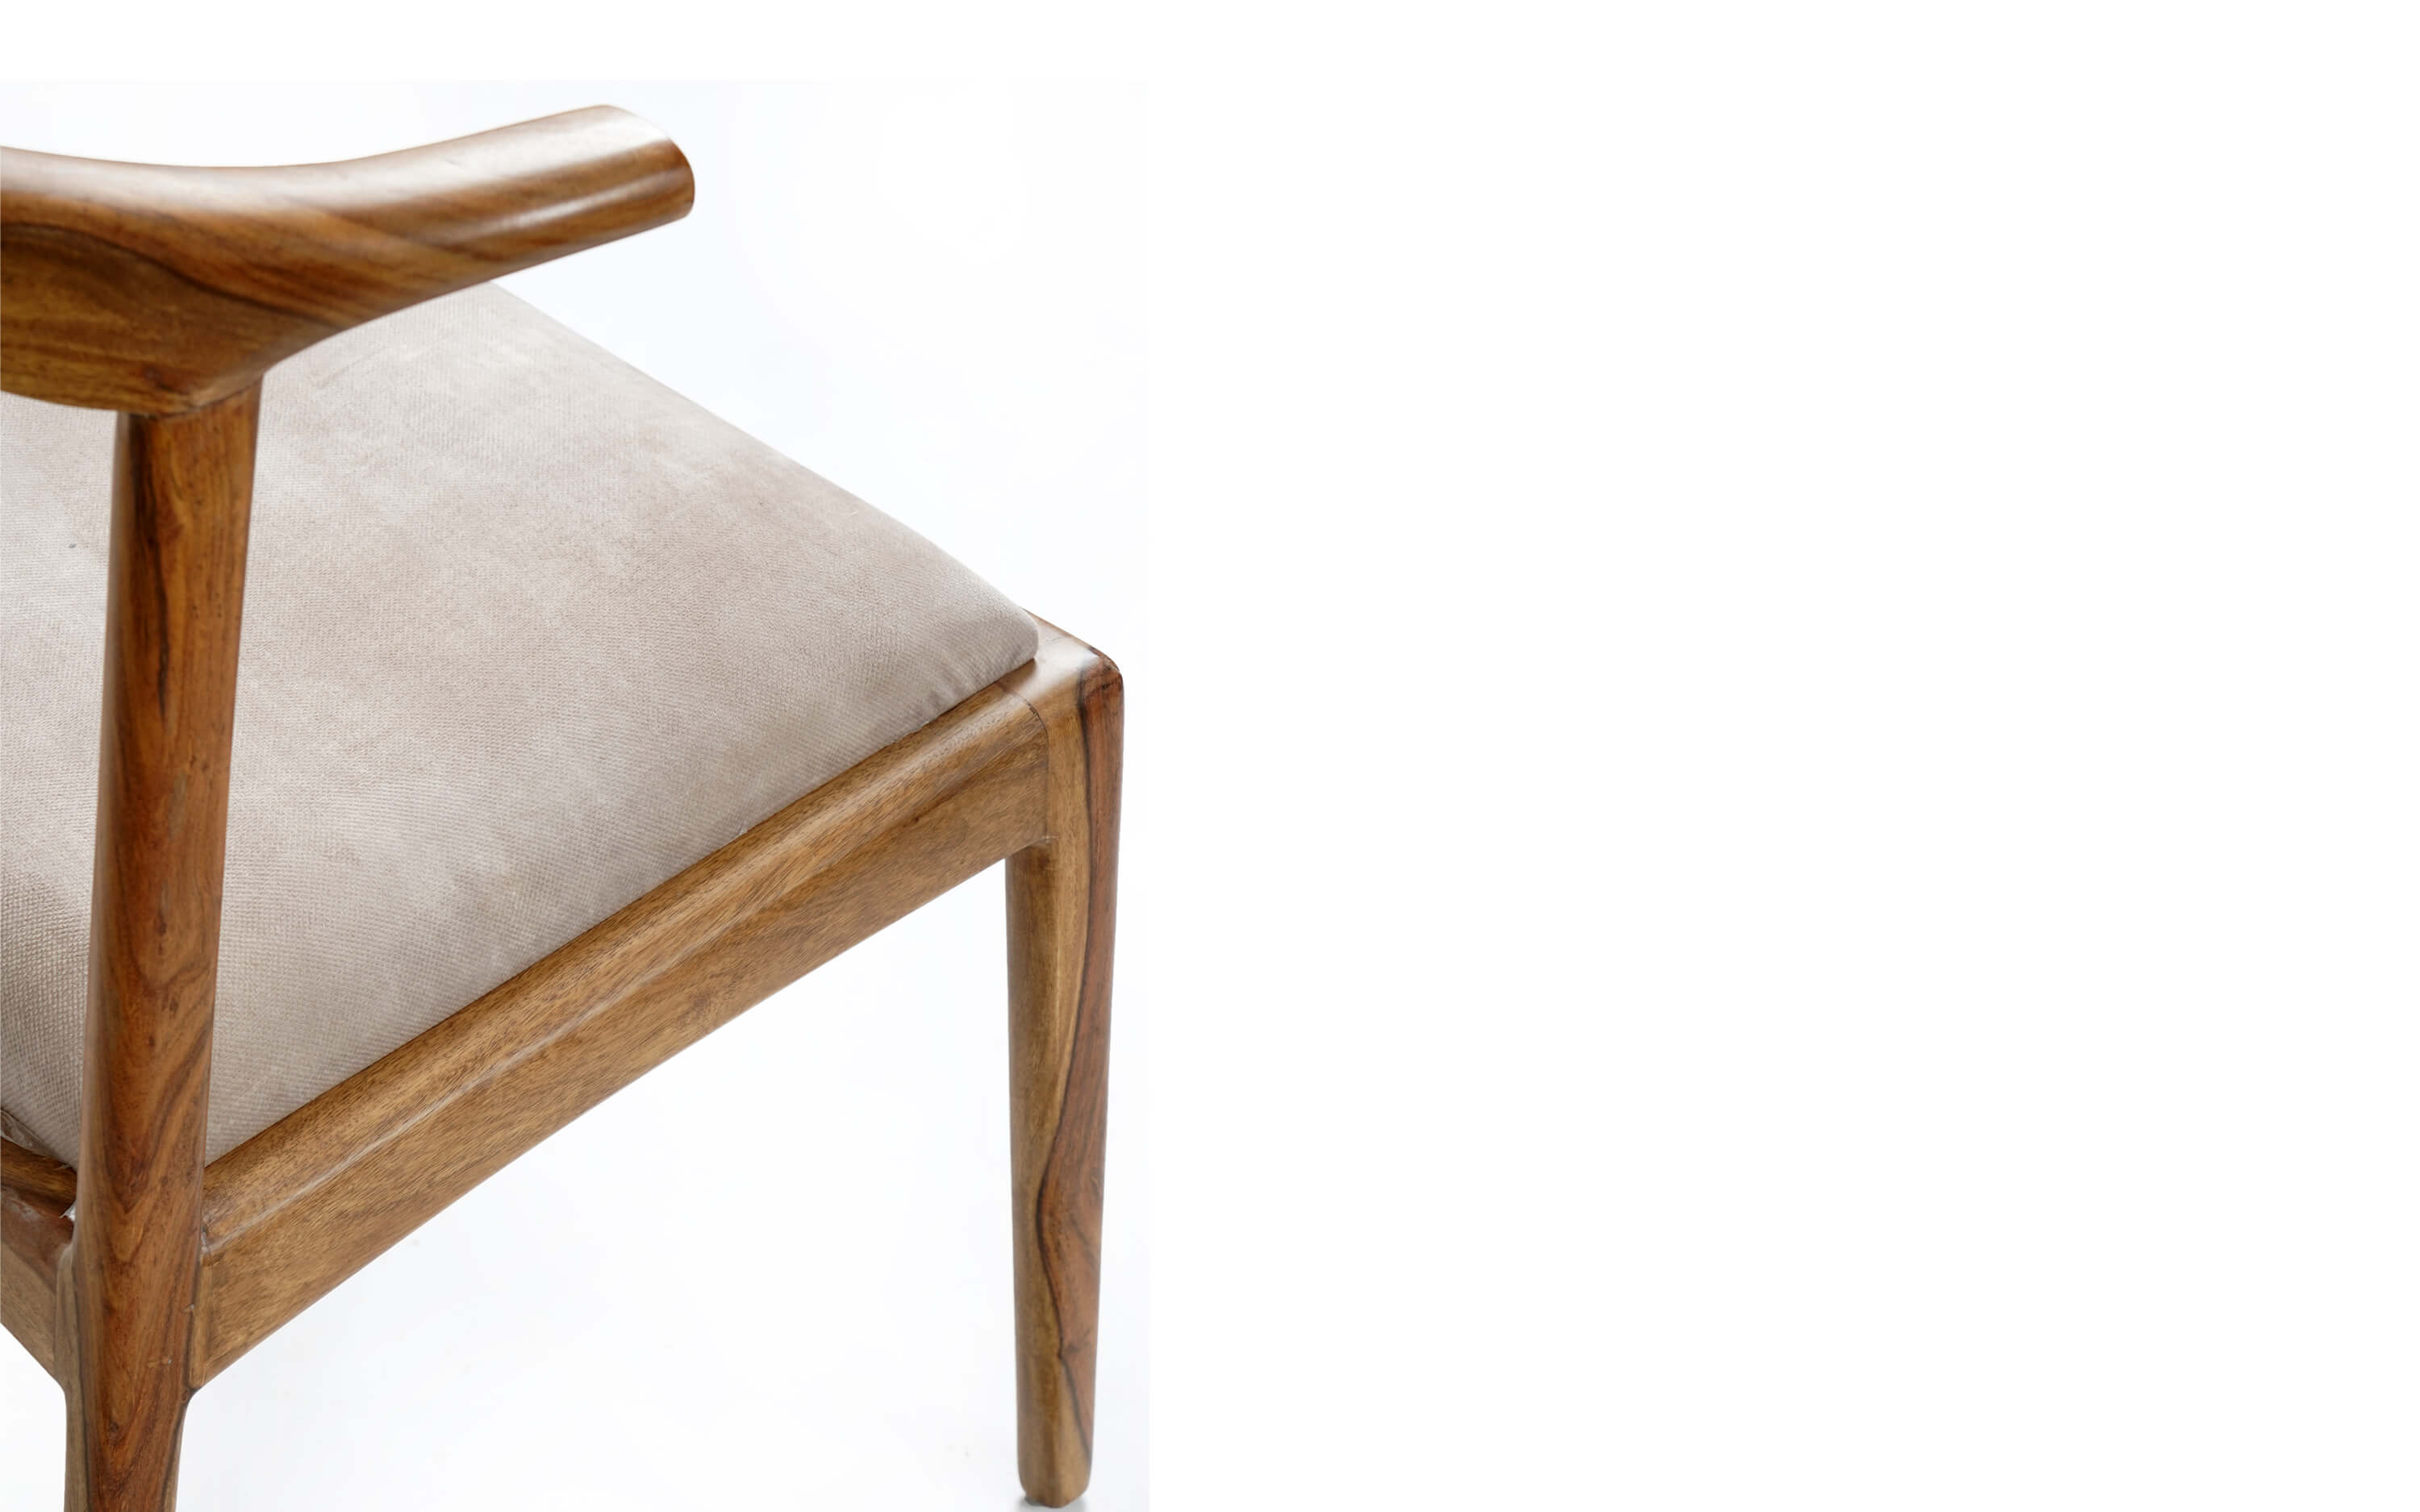 wooden high chair. wooden chair design wooden office chair. wooden rest chair